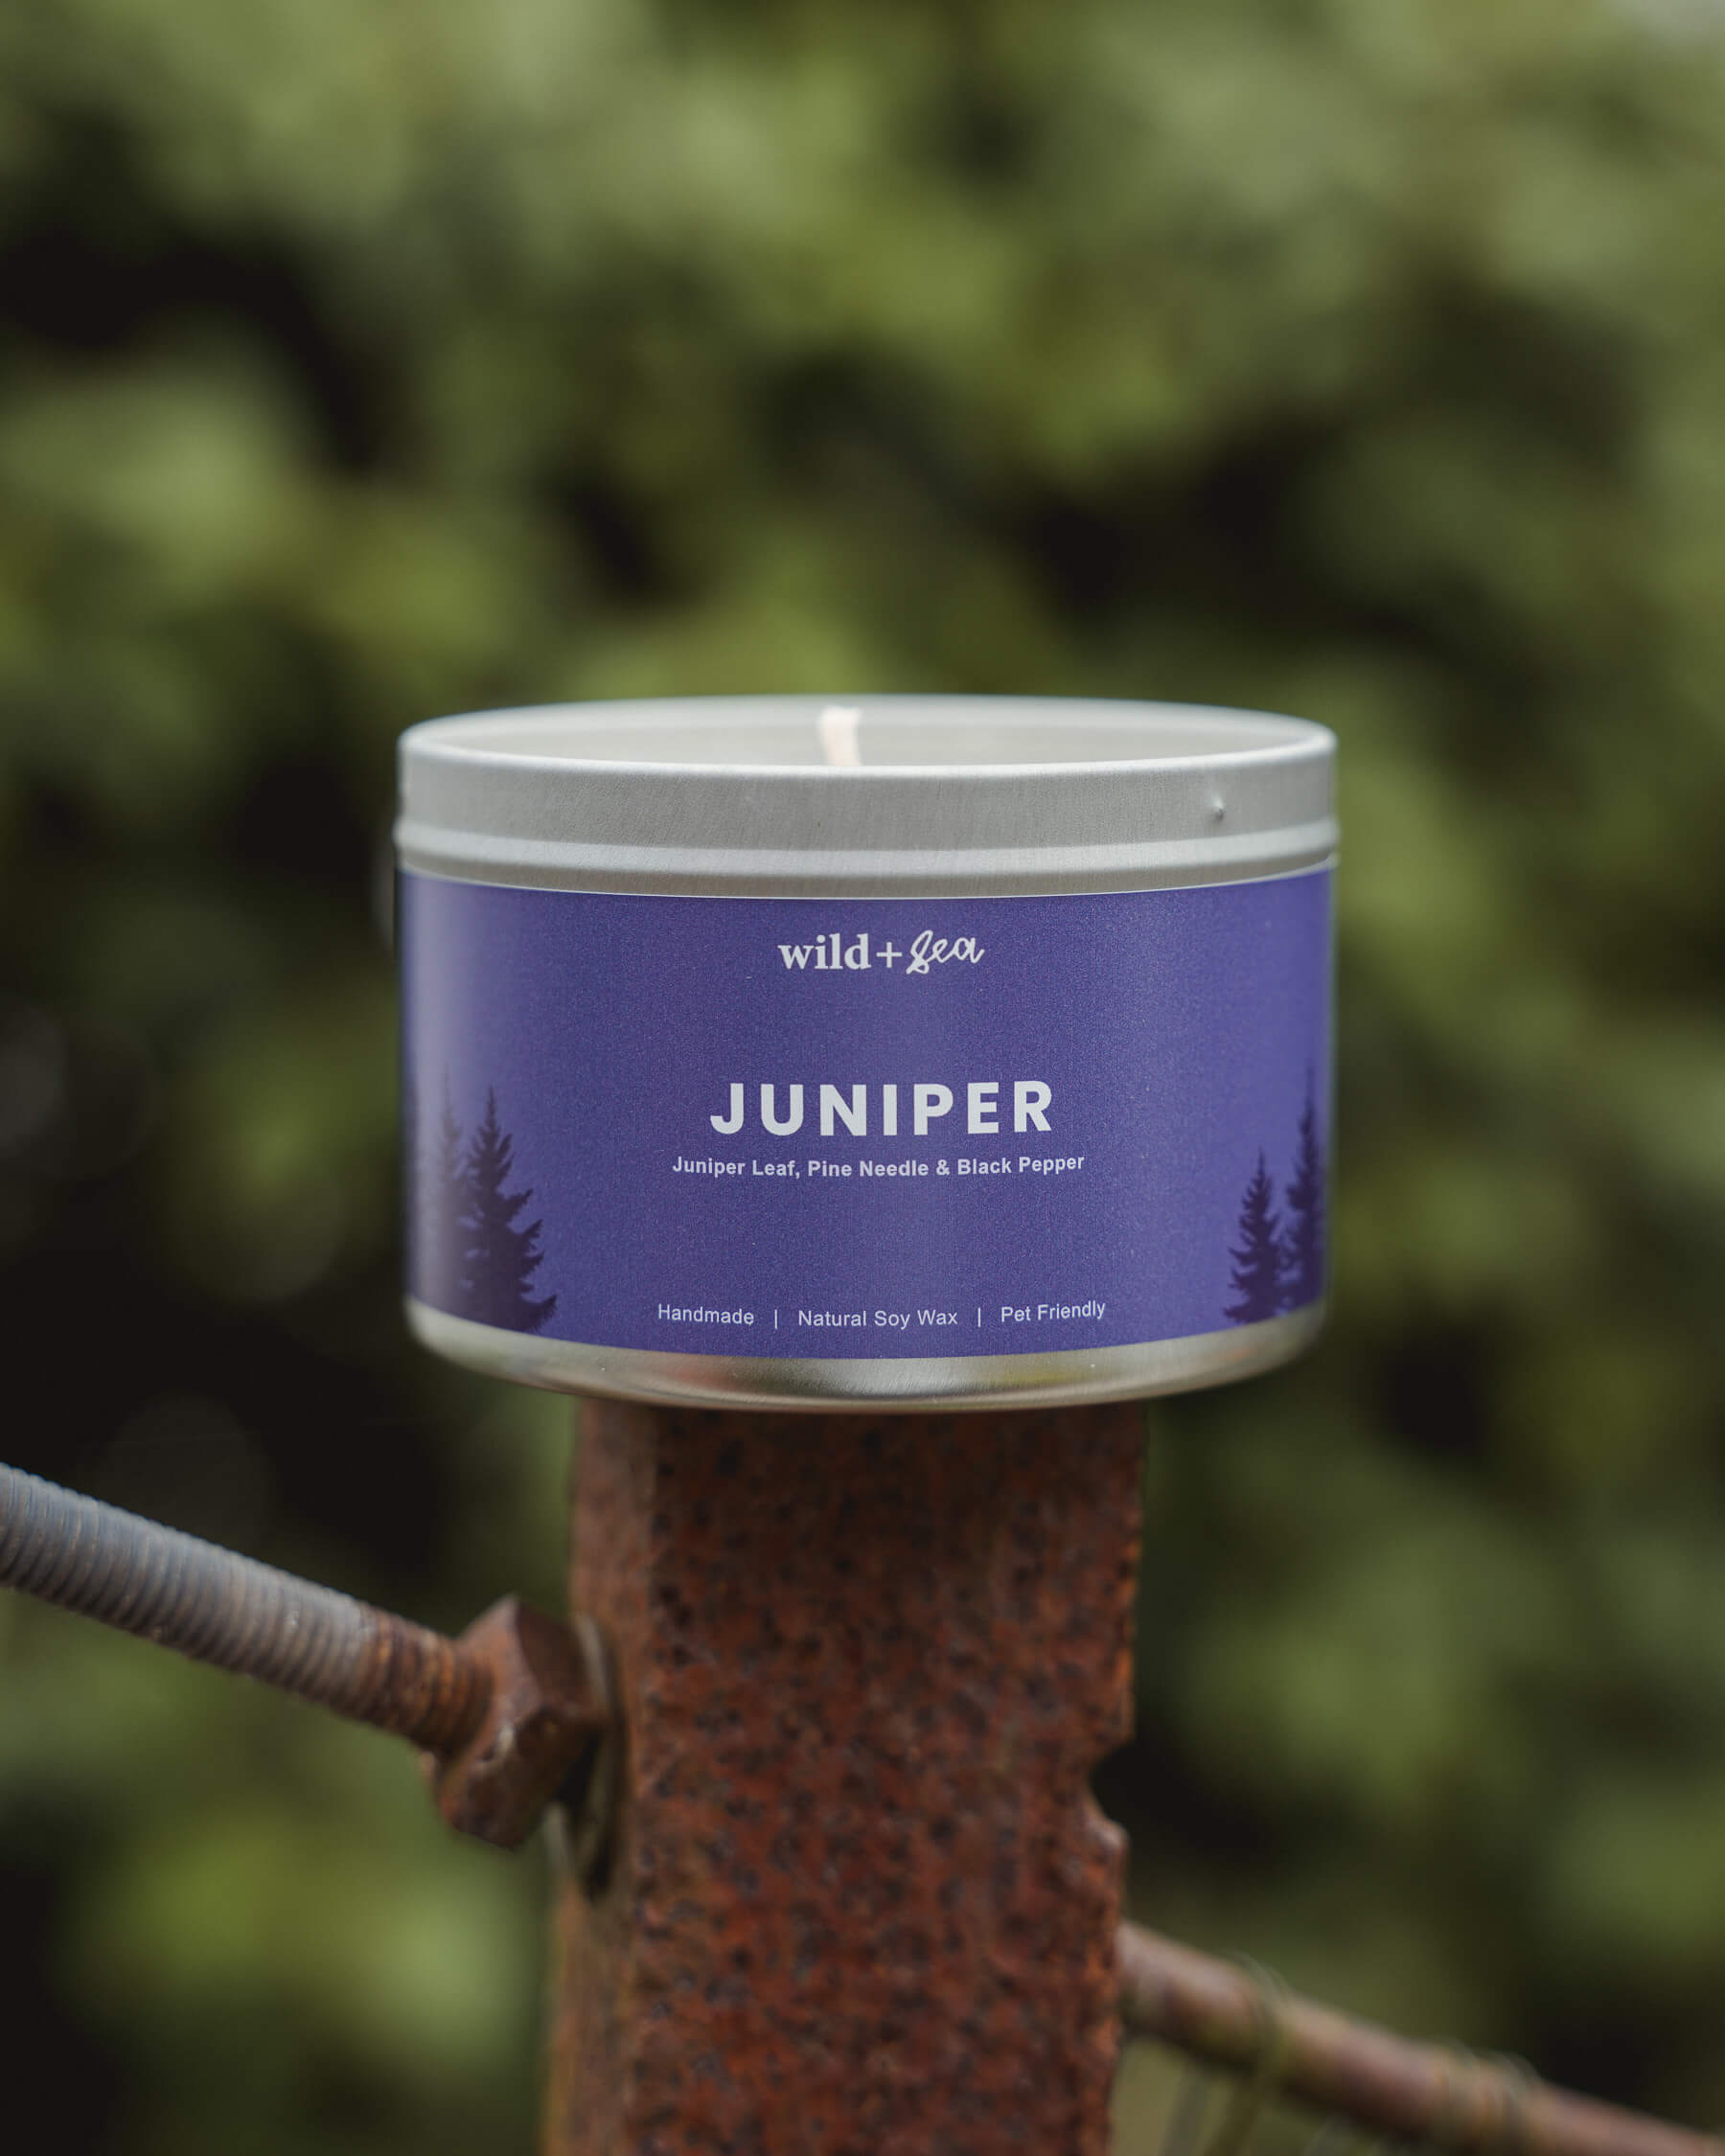 JUNIPER | Juniper, Pine & Black Pepper | Soy Wax Pet Friendly Candle